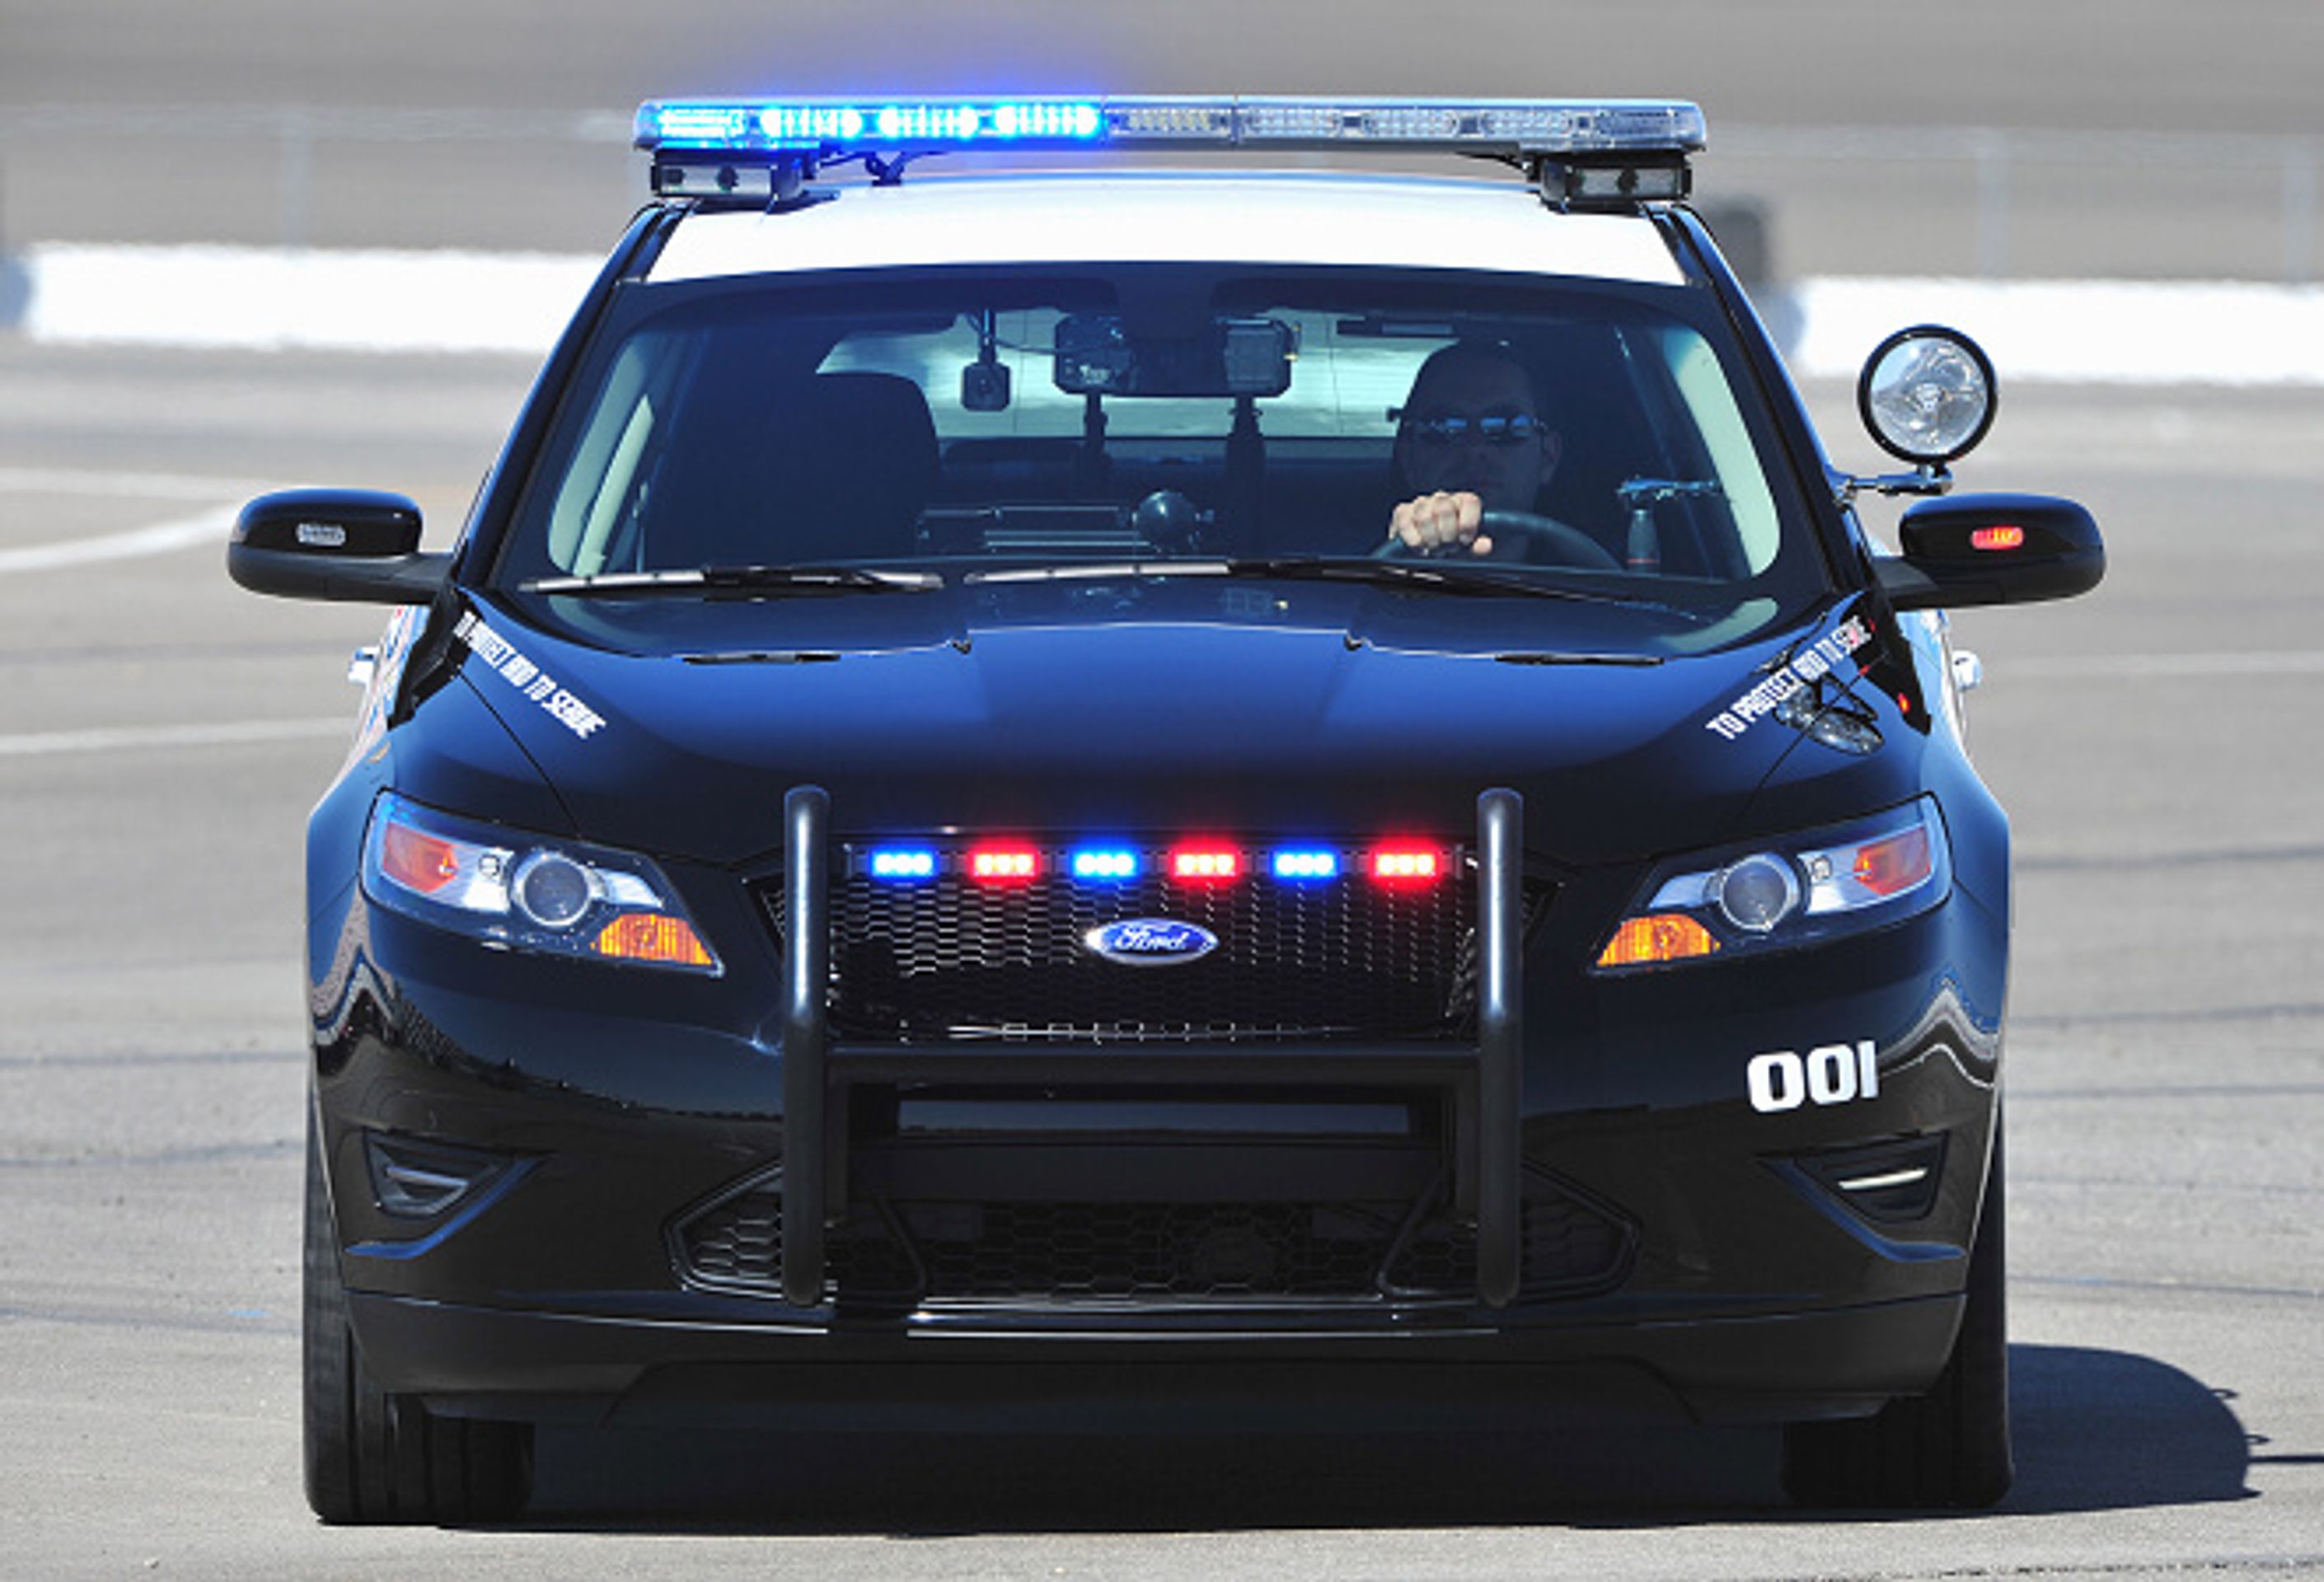 Ford Interceptor - GALERIE USA policejní auto (7/8)